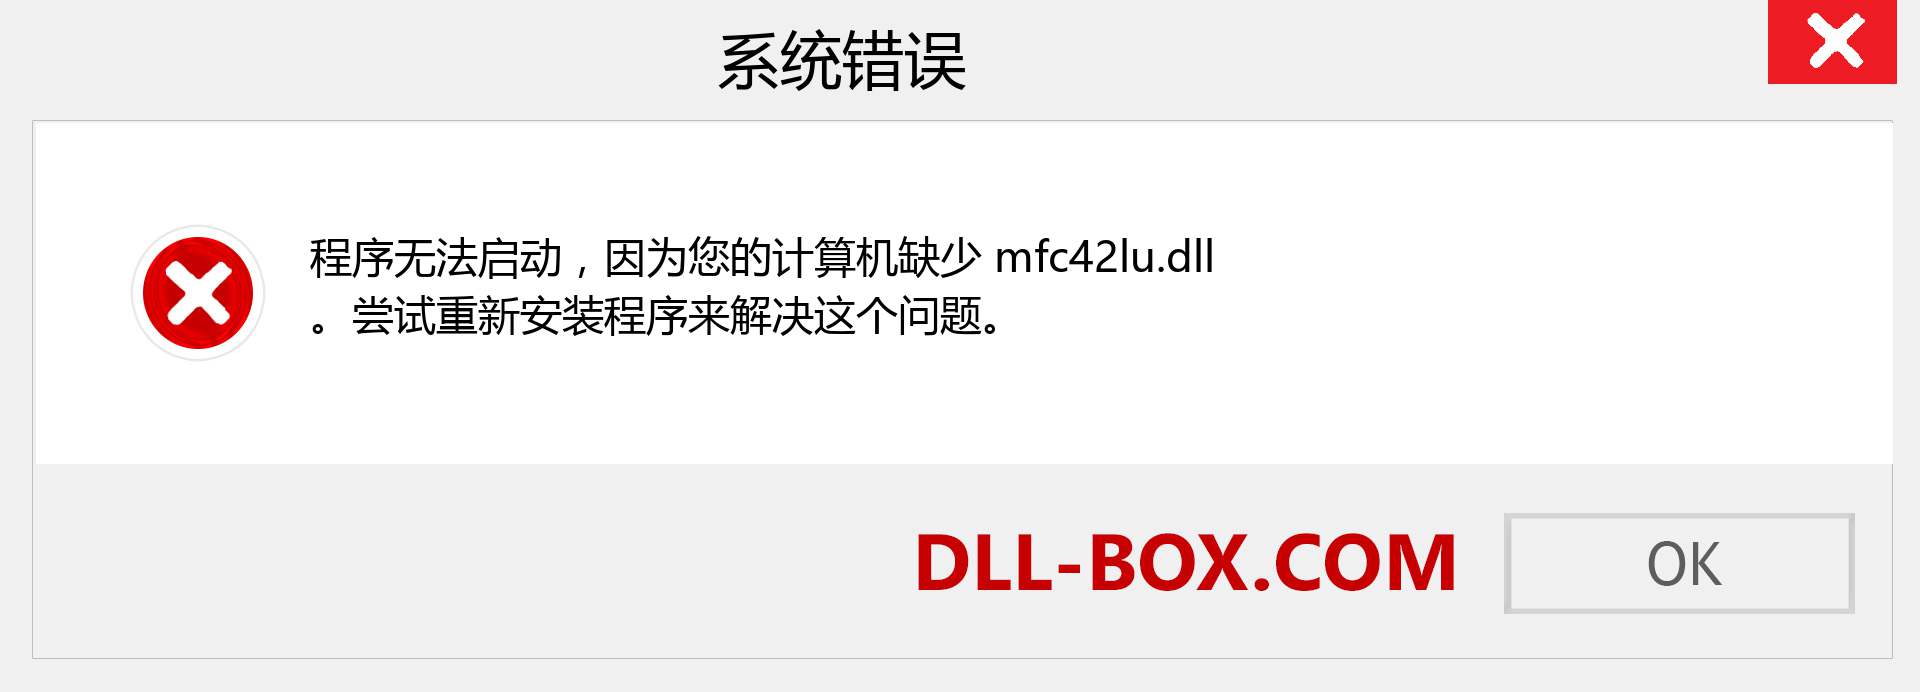 mfc42lu.dll 文件丢失？。 适用于 Windows 7、8、10 的下载 - 修复 Windows、照片、图像上的 mfc42lu dll 丢失错误